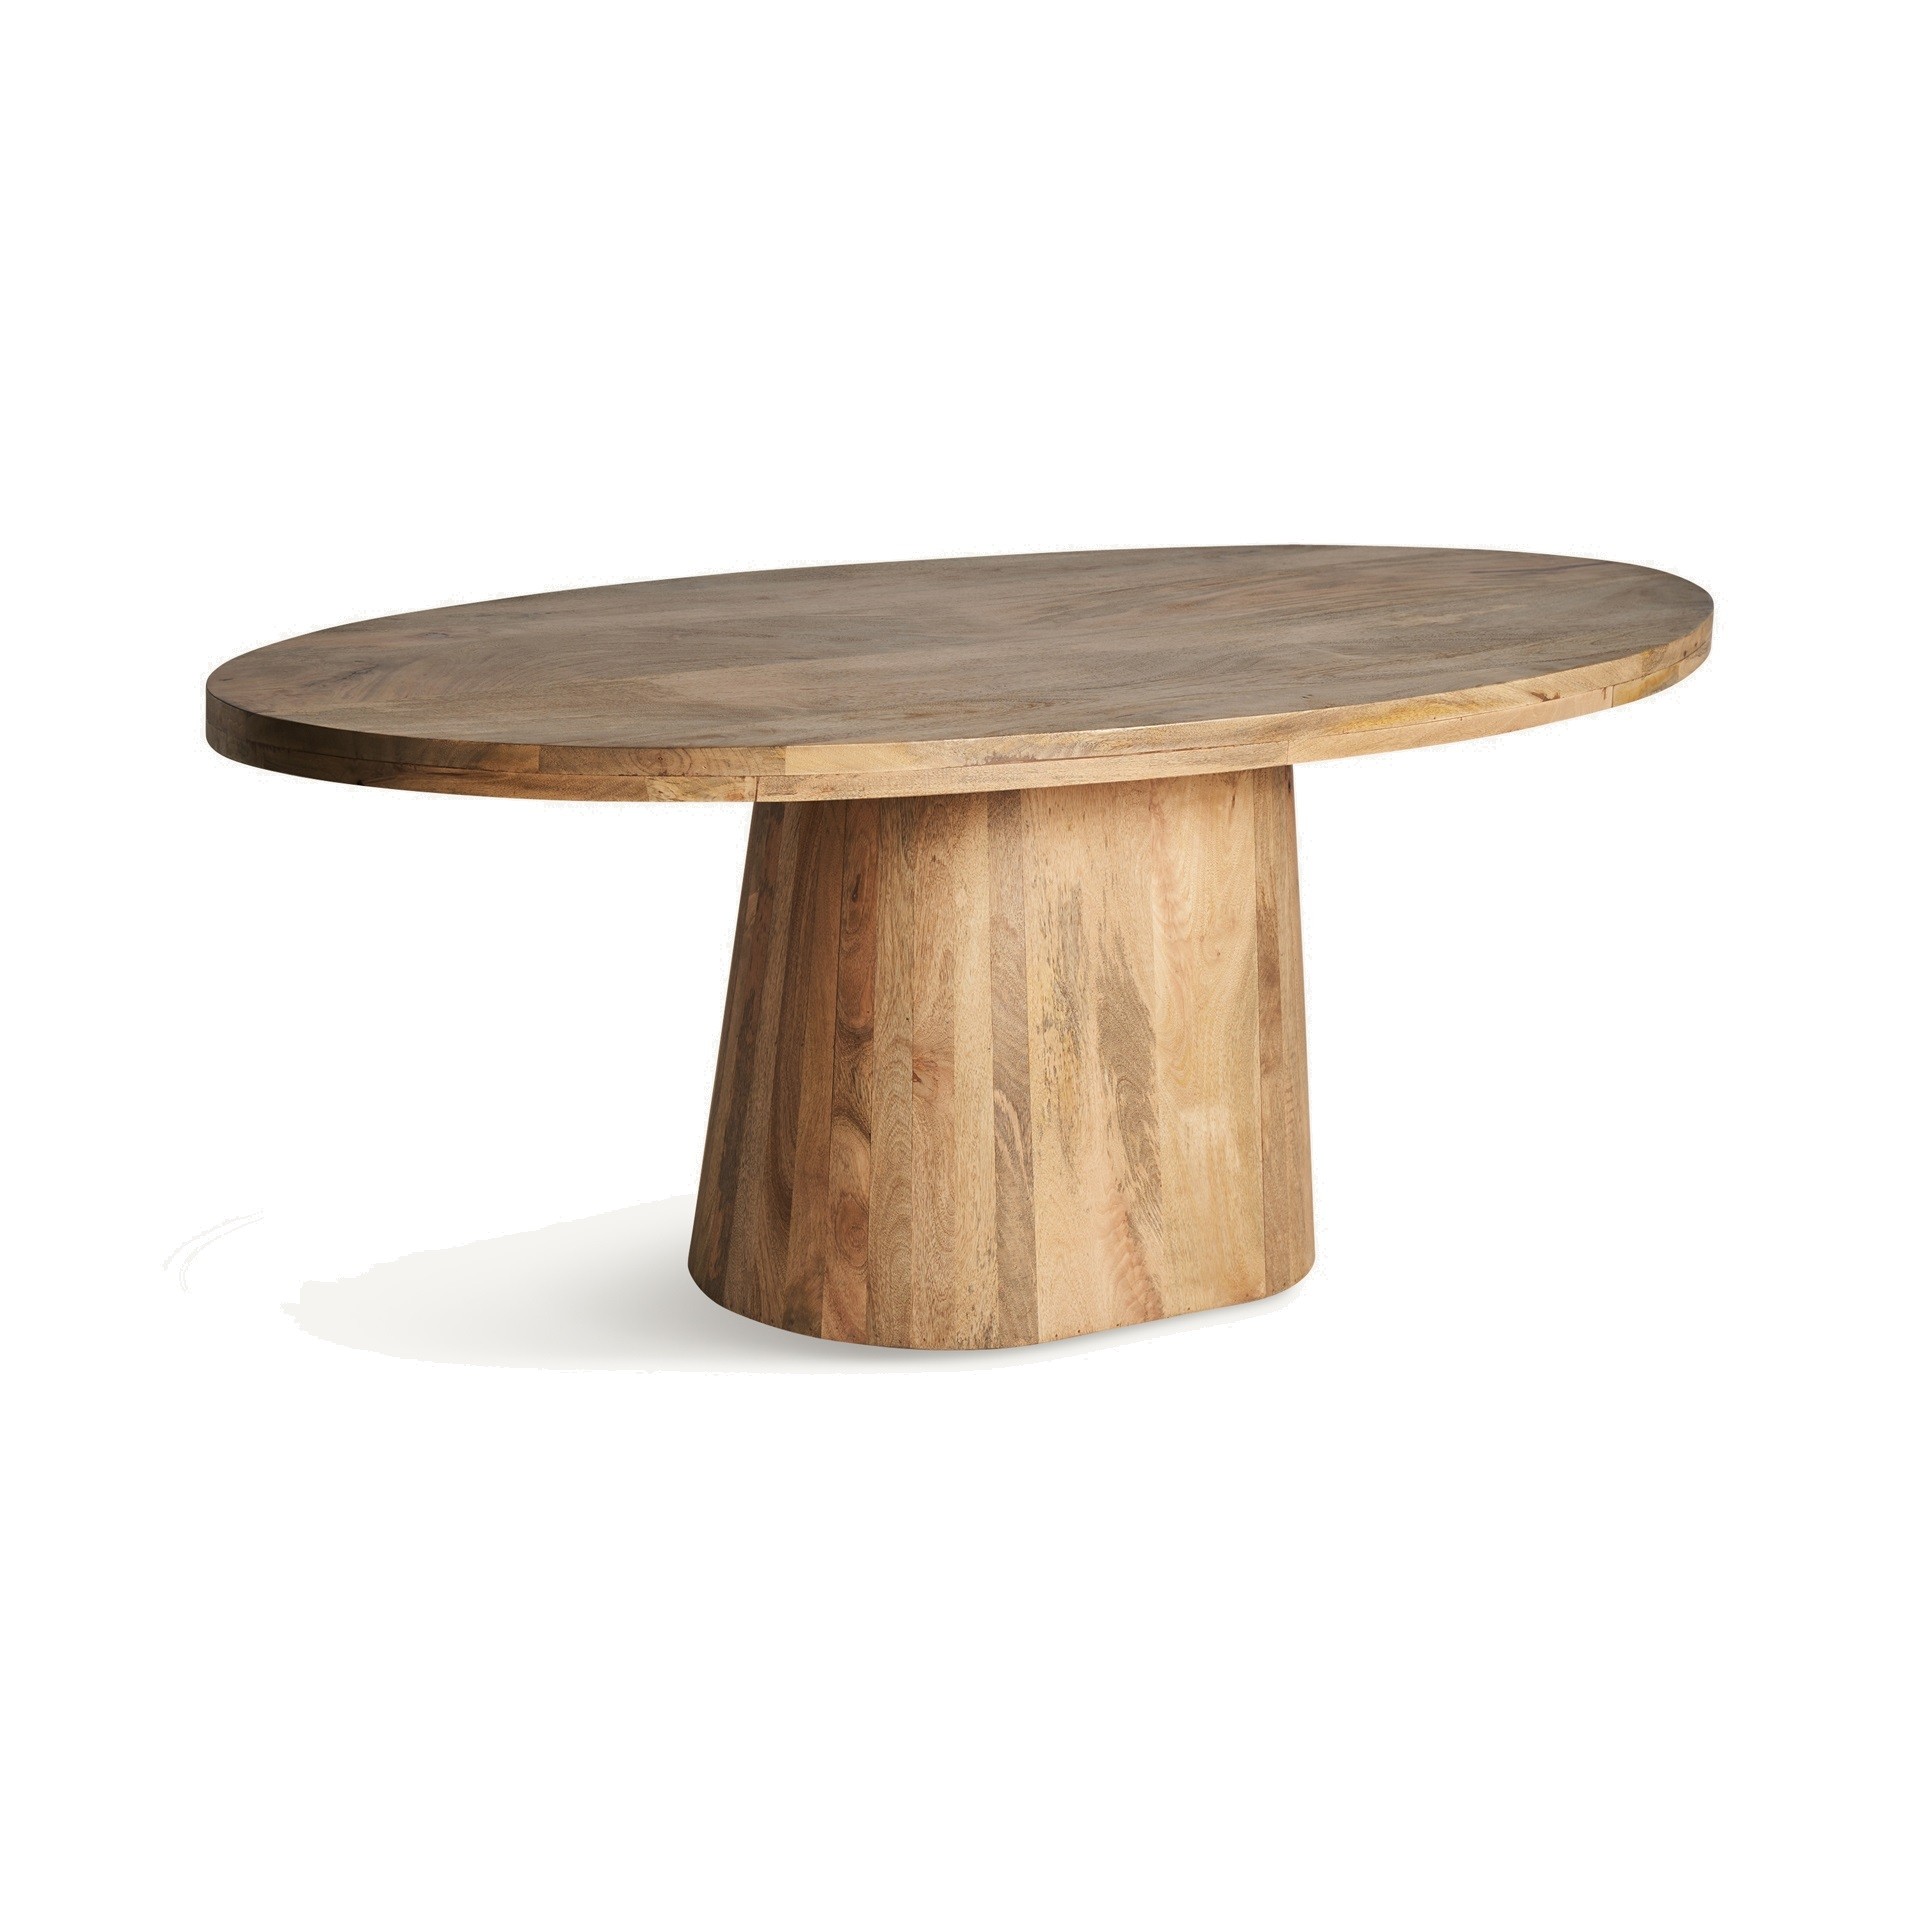 Estila Luxusní moderní jídelní stůl Malen v oválném tvaru s venkovským nádechem z masivního dřeva v hnědé barvě 200 cm